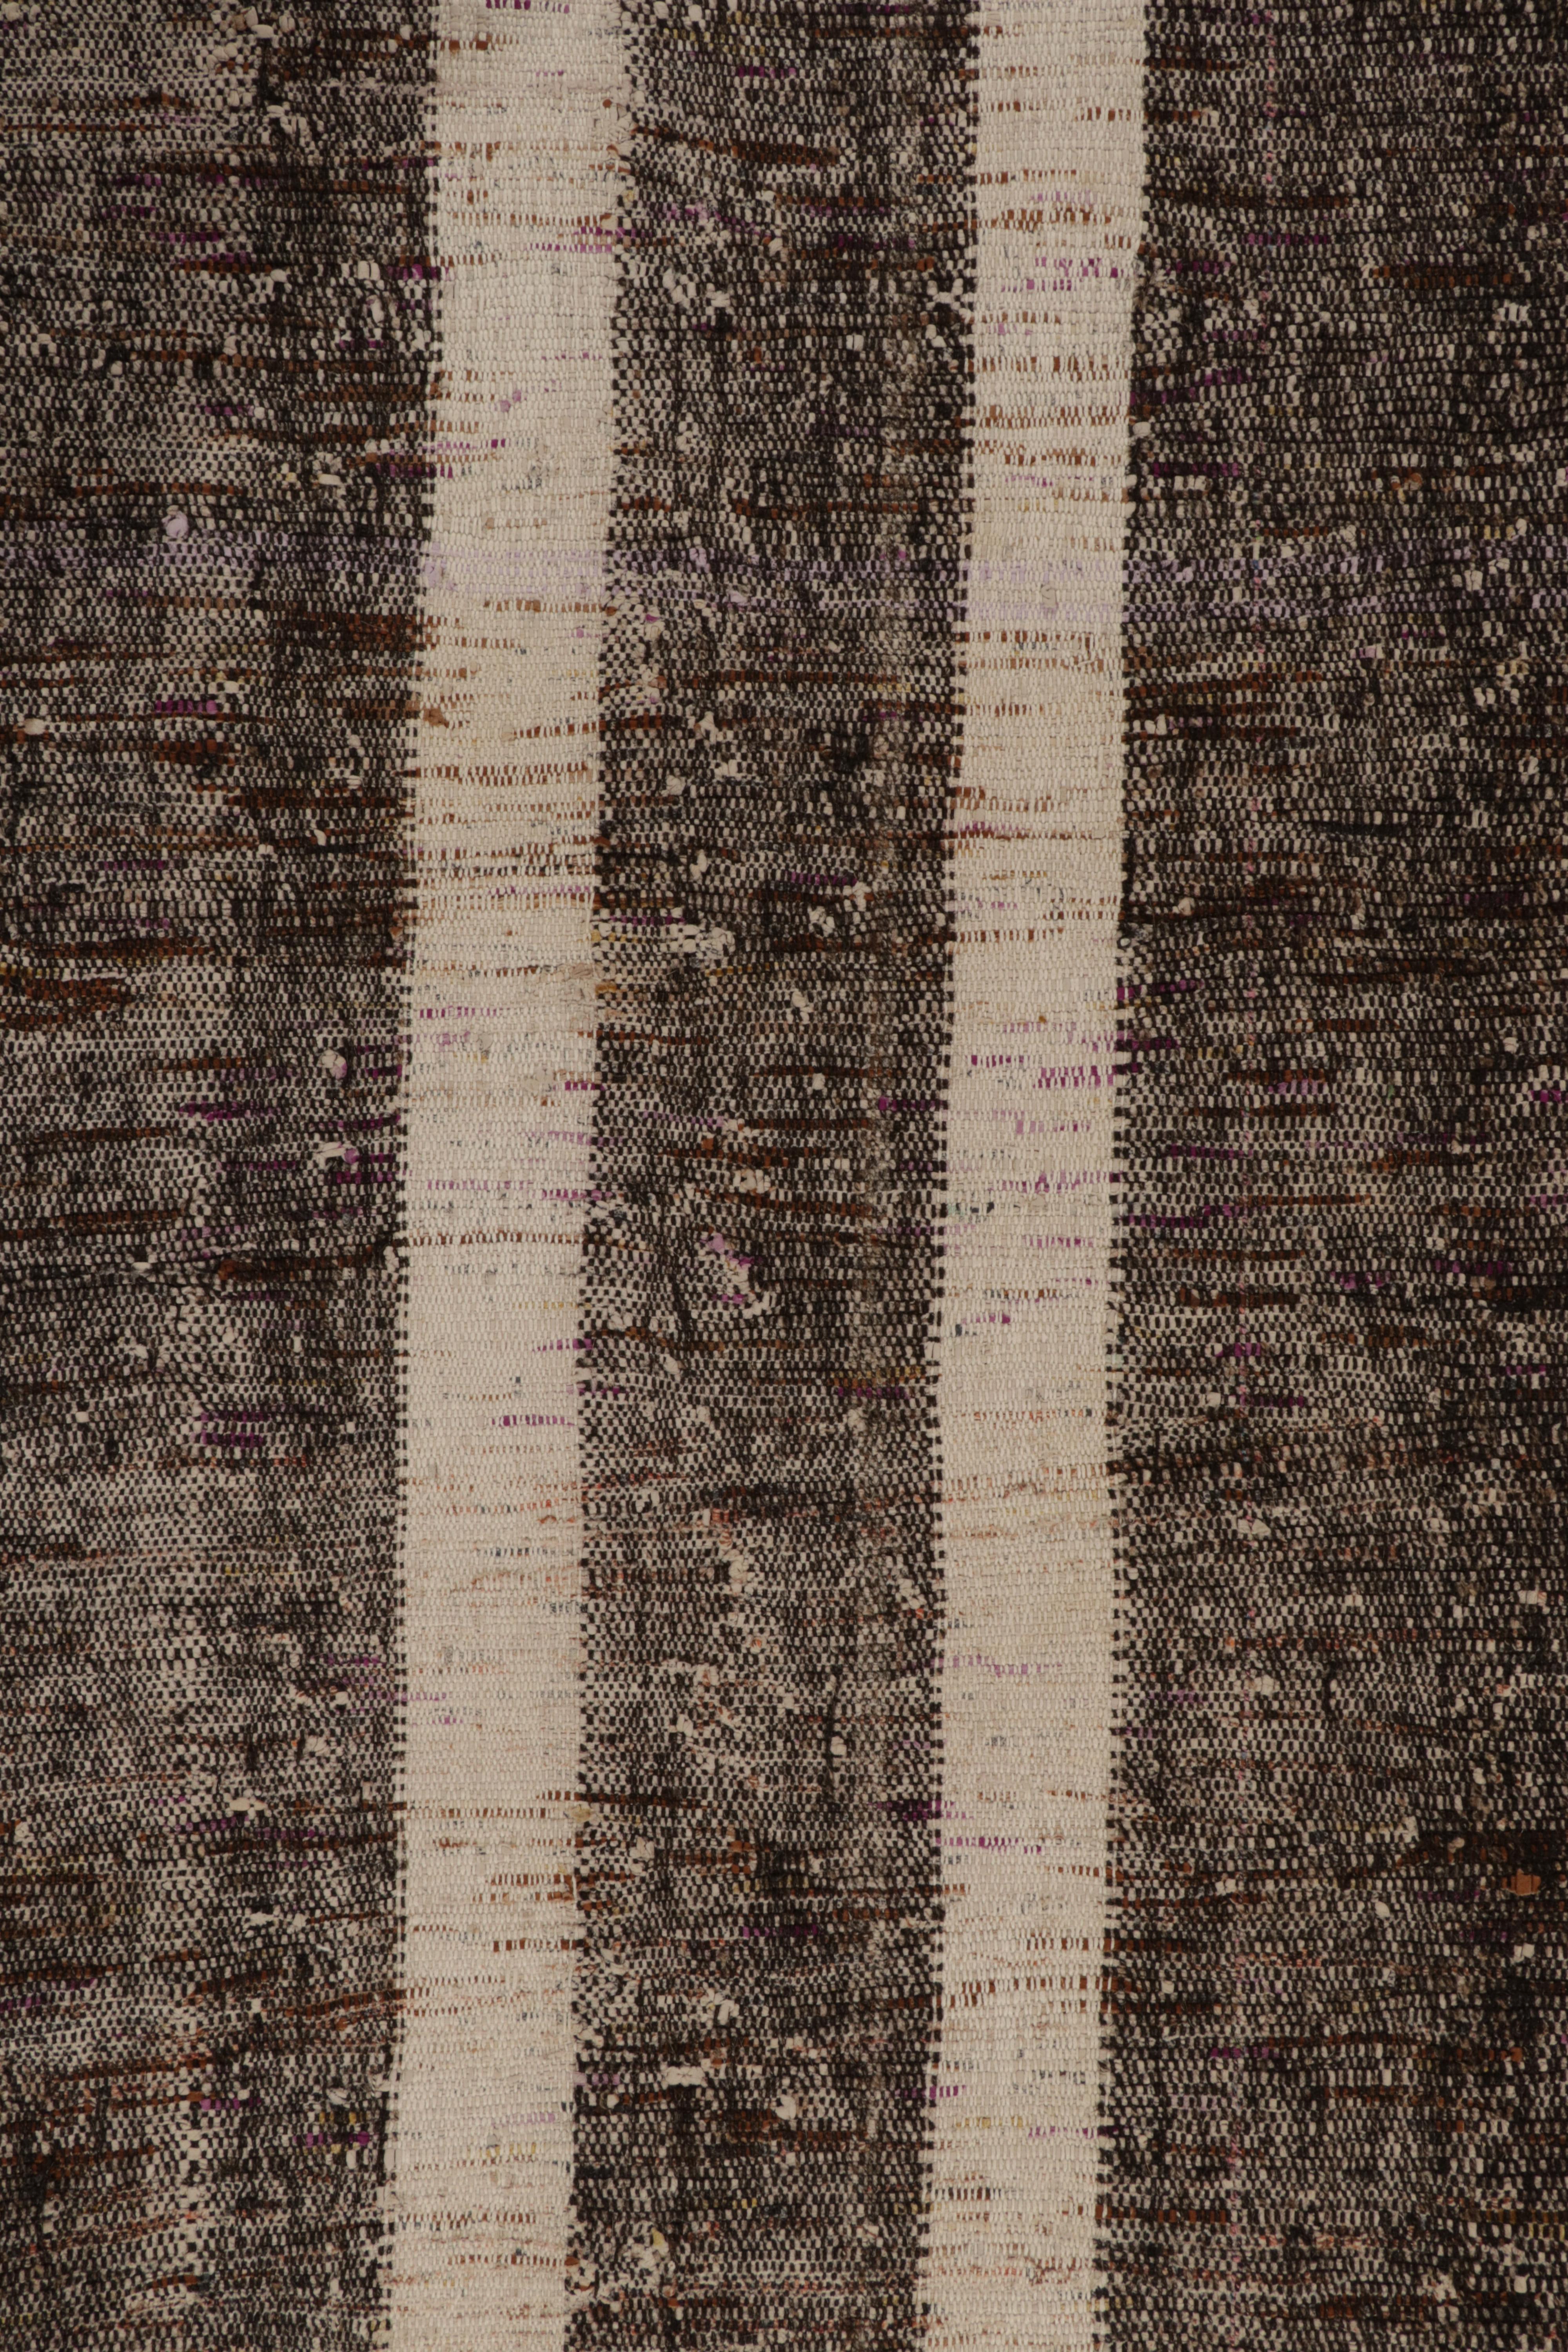 Wool Vintage Turkish Kilim Rug in Beige-Brown Stripe Patterns by Rug & Kilim For Sale